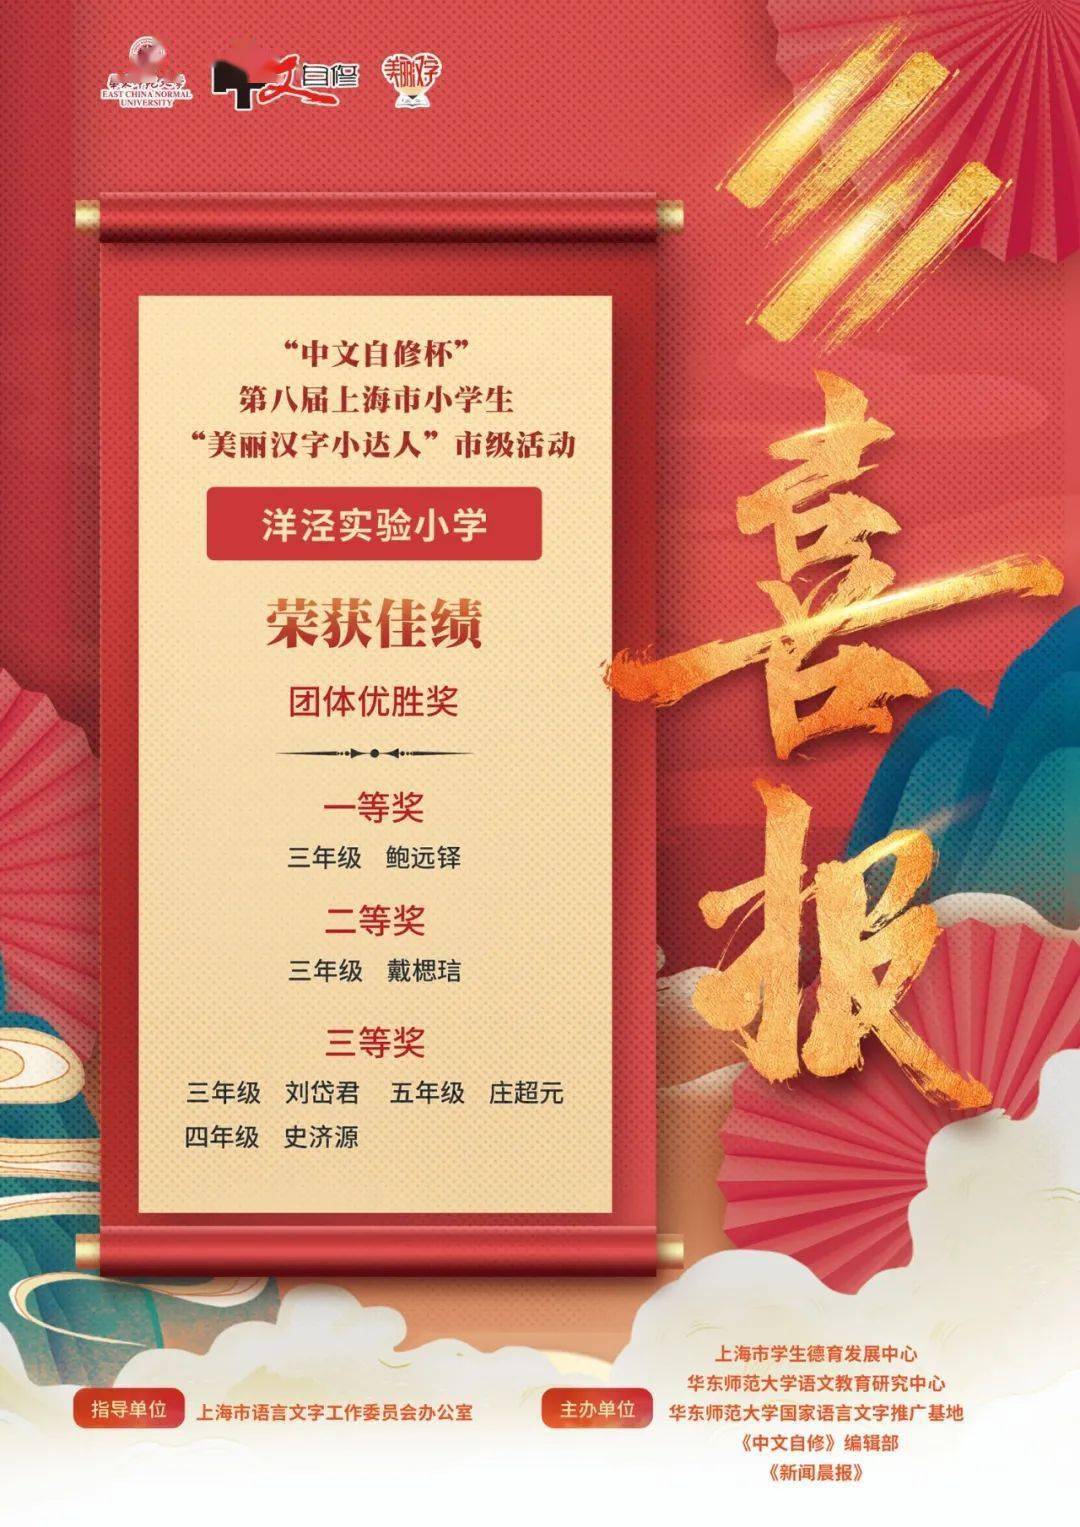 上海市浦东新区洋泾实验小学喜报 第八届 美丽汉字小达人 市级活动 喜报 活动